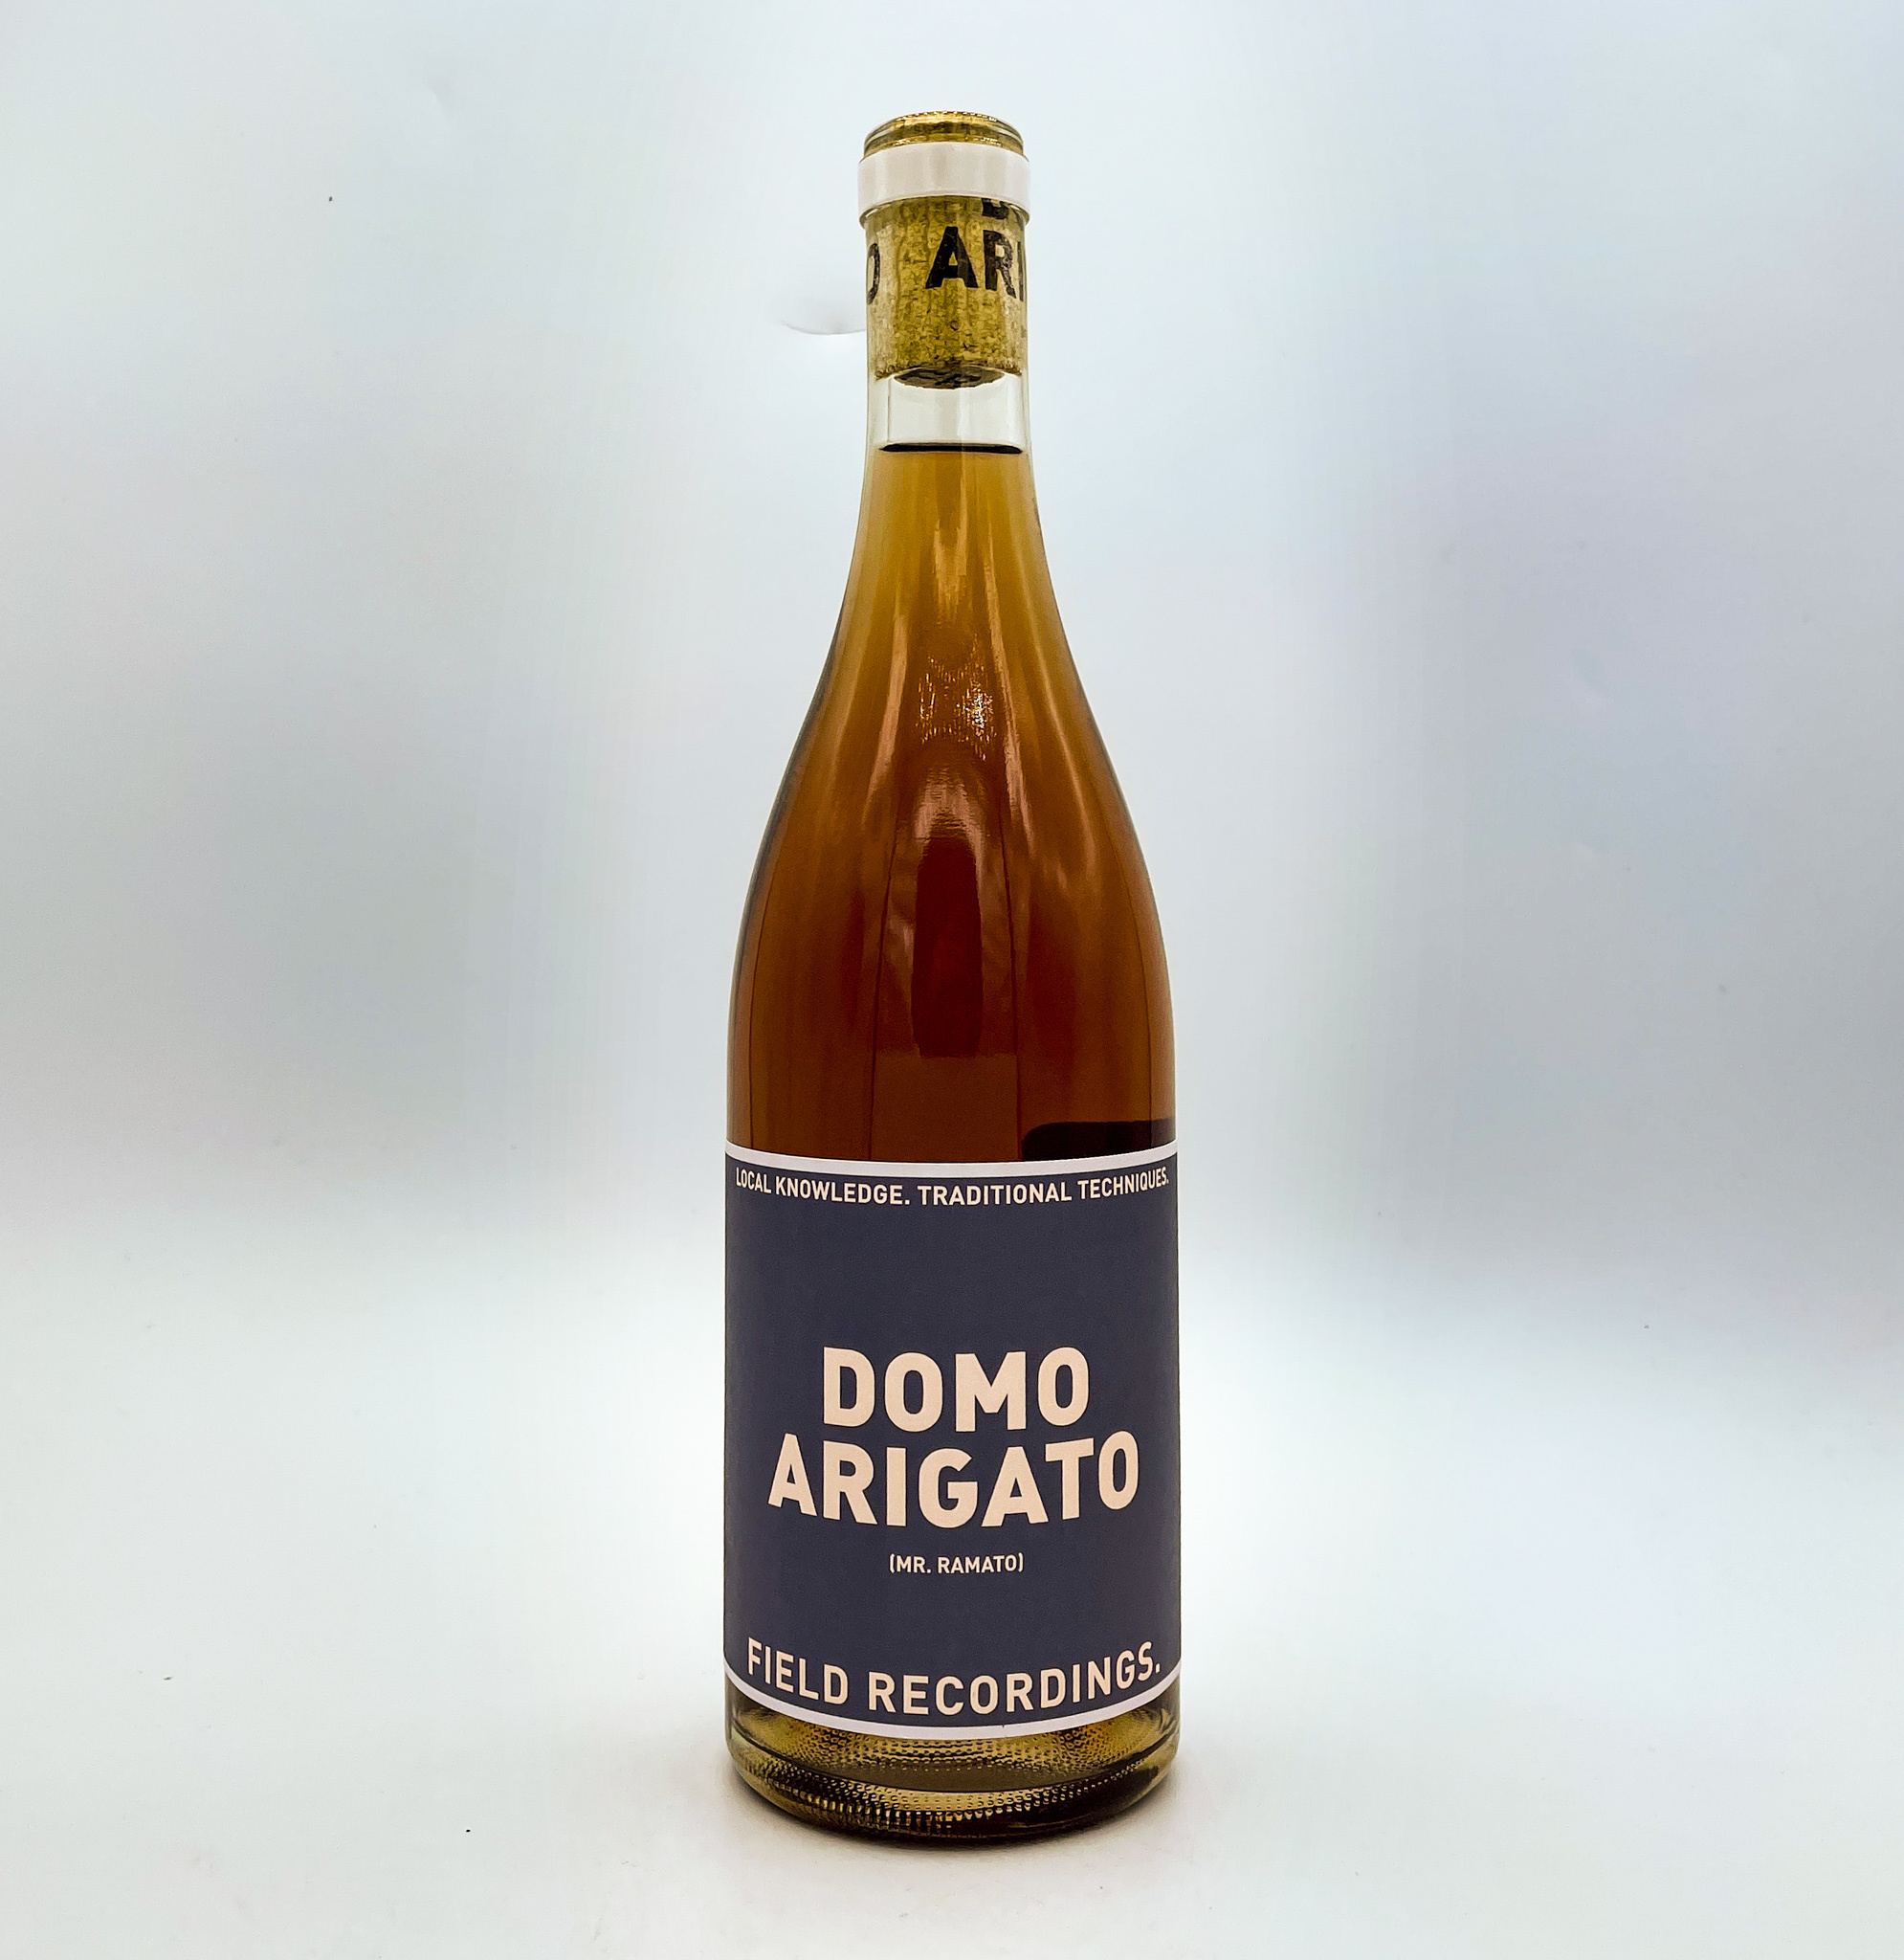 Domo arigato wine